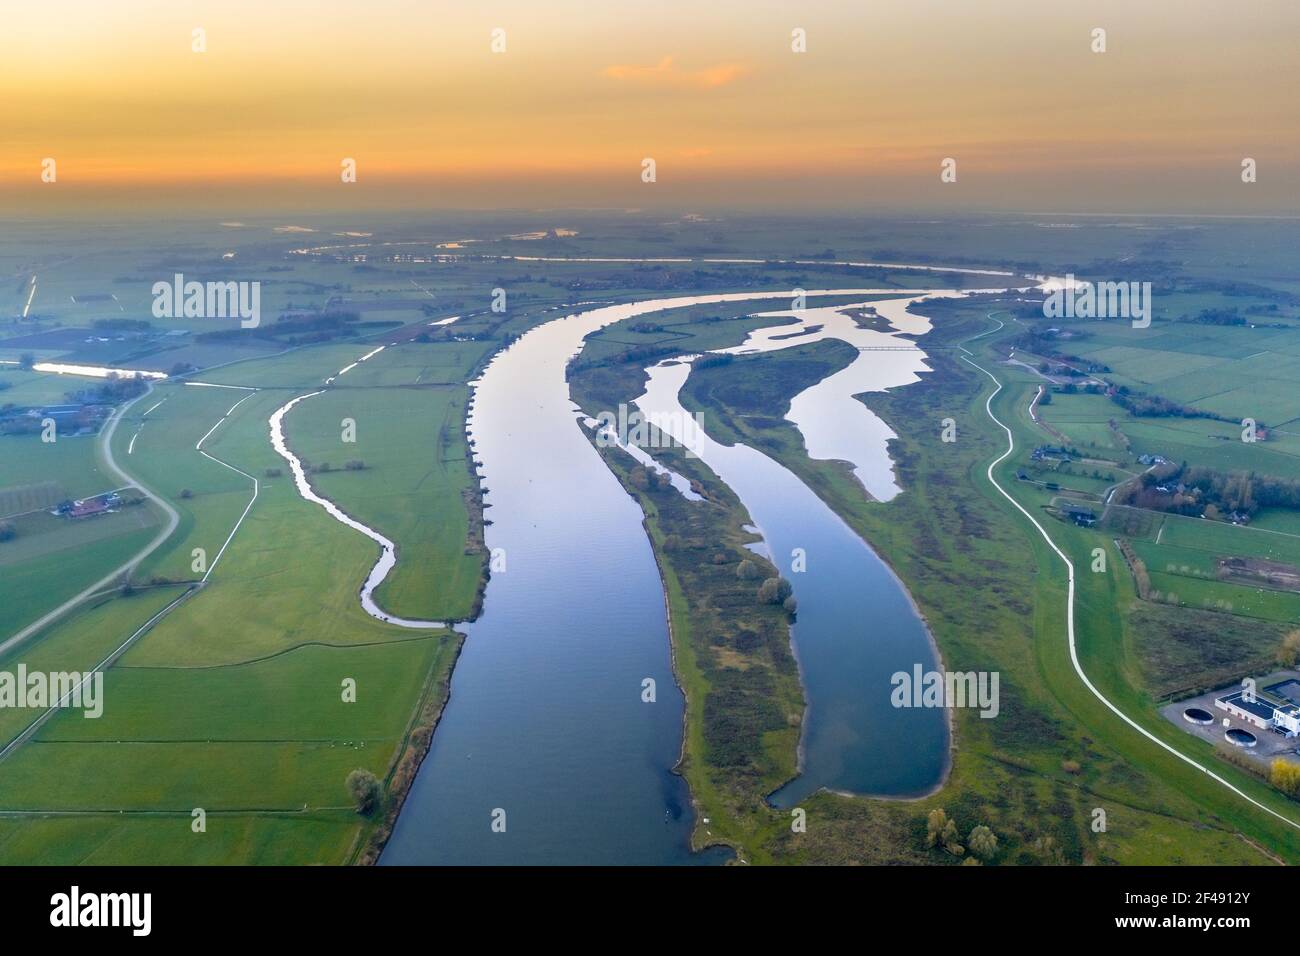 Luftaufnahme des riesigen Tieflandflusses IJssel durch Sonnenuntergangslandschaft. Zwolle, Overijssel Provinz, Niederlande. Drohnenszene in der Natur Europas. Stockfoto